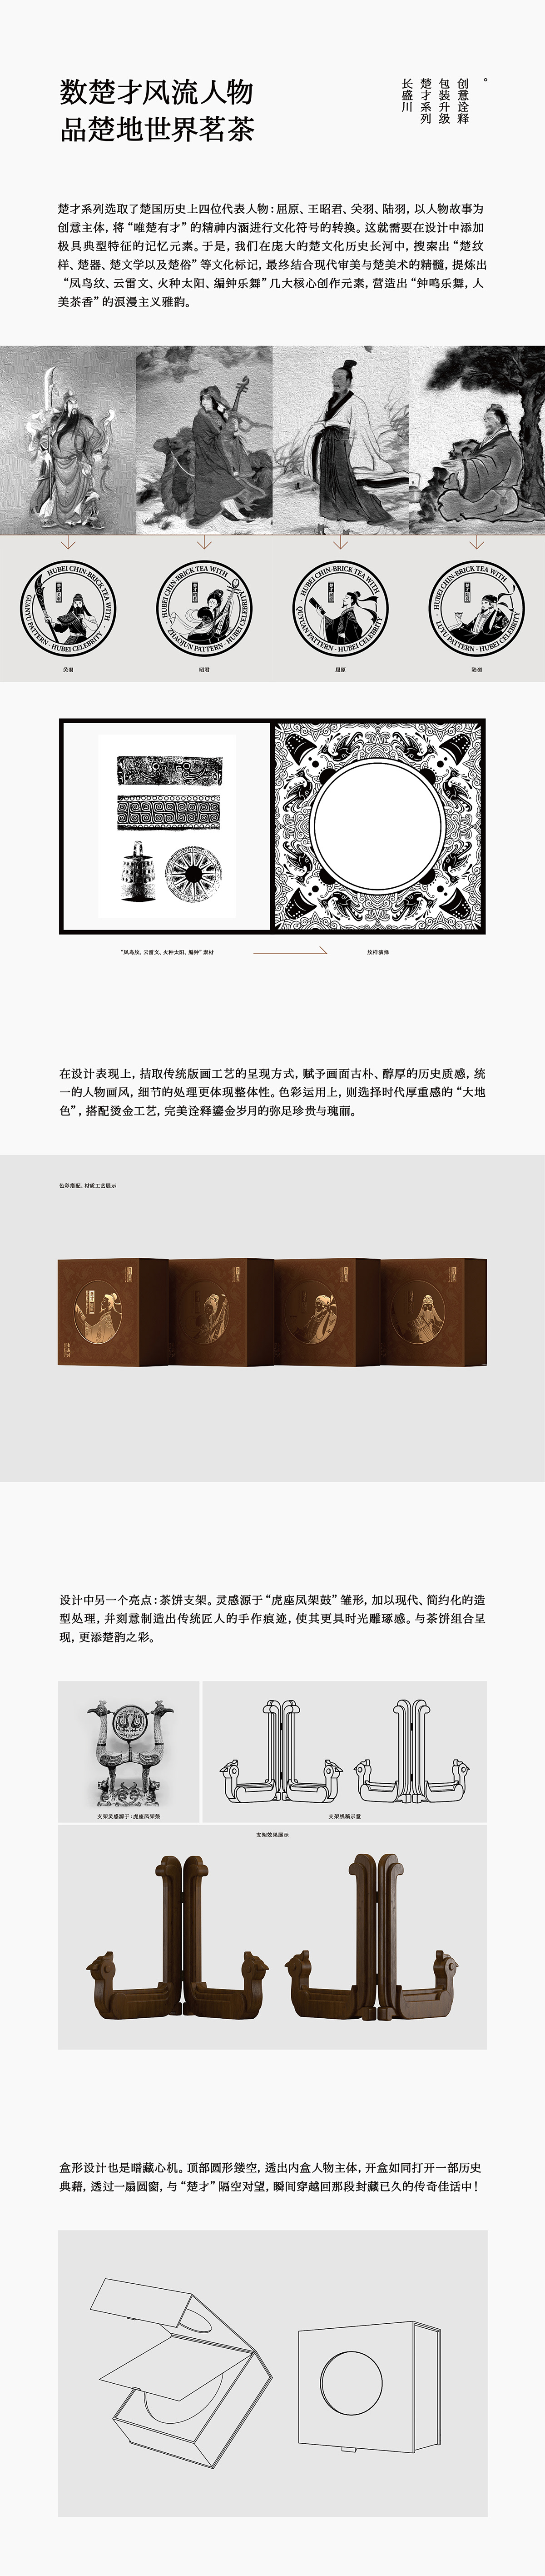 中国文化 人物 包装设计 插画 版画 礼盒设计 荆楚 高端